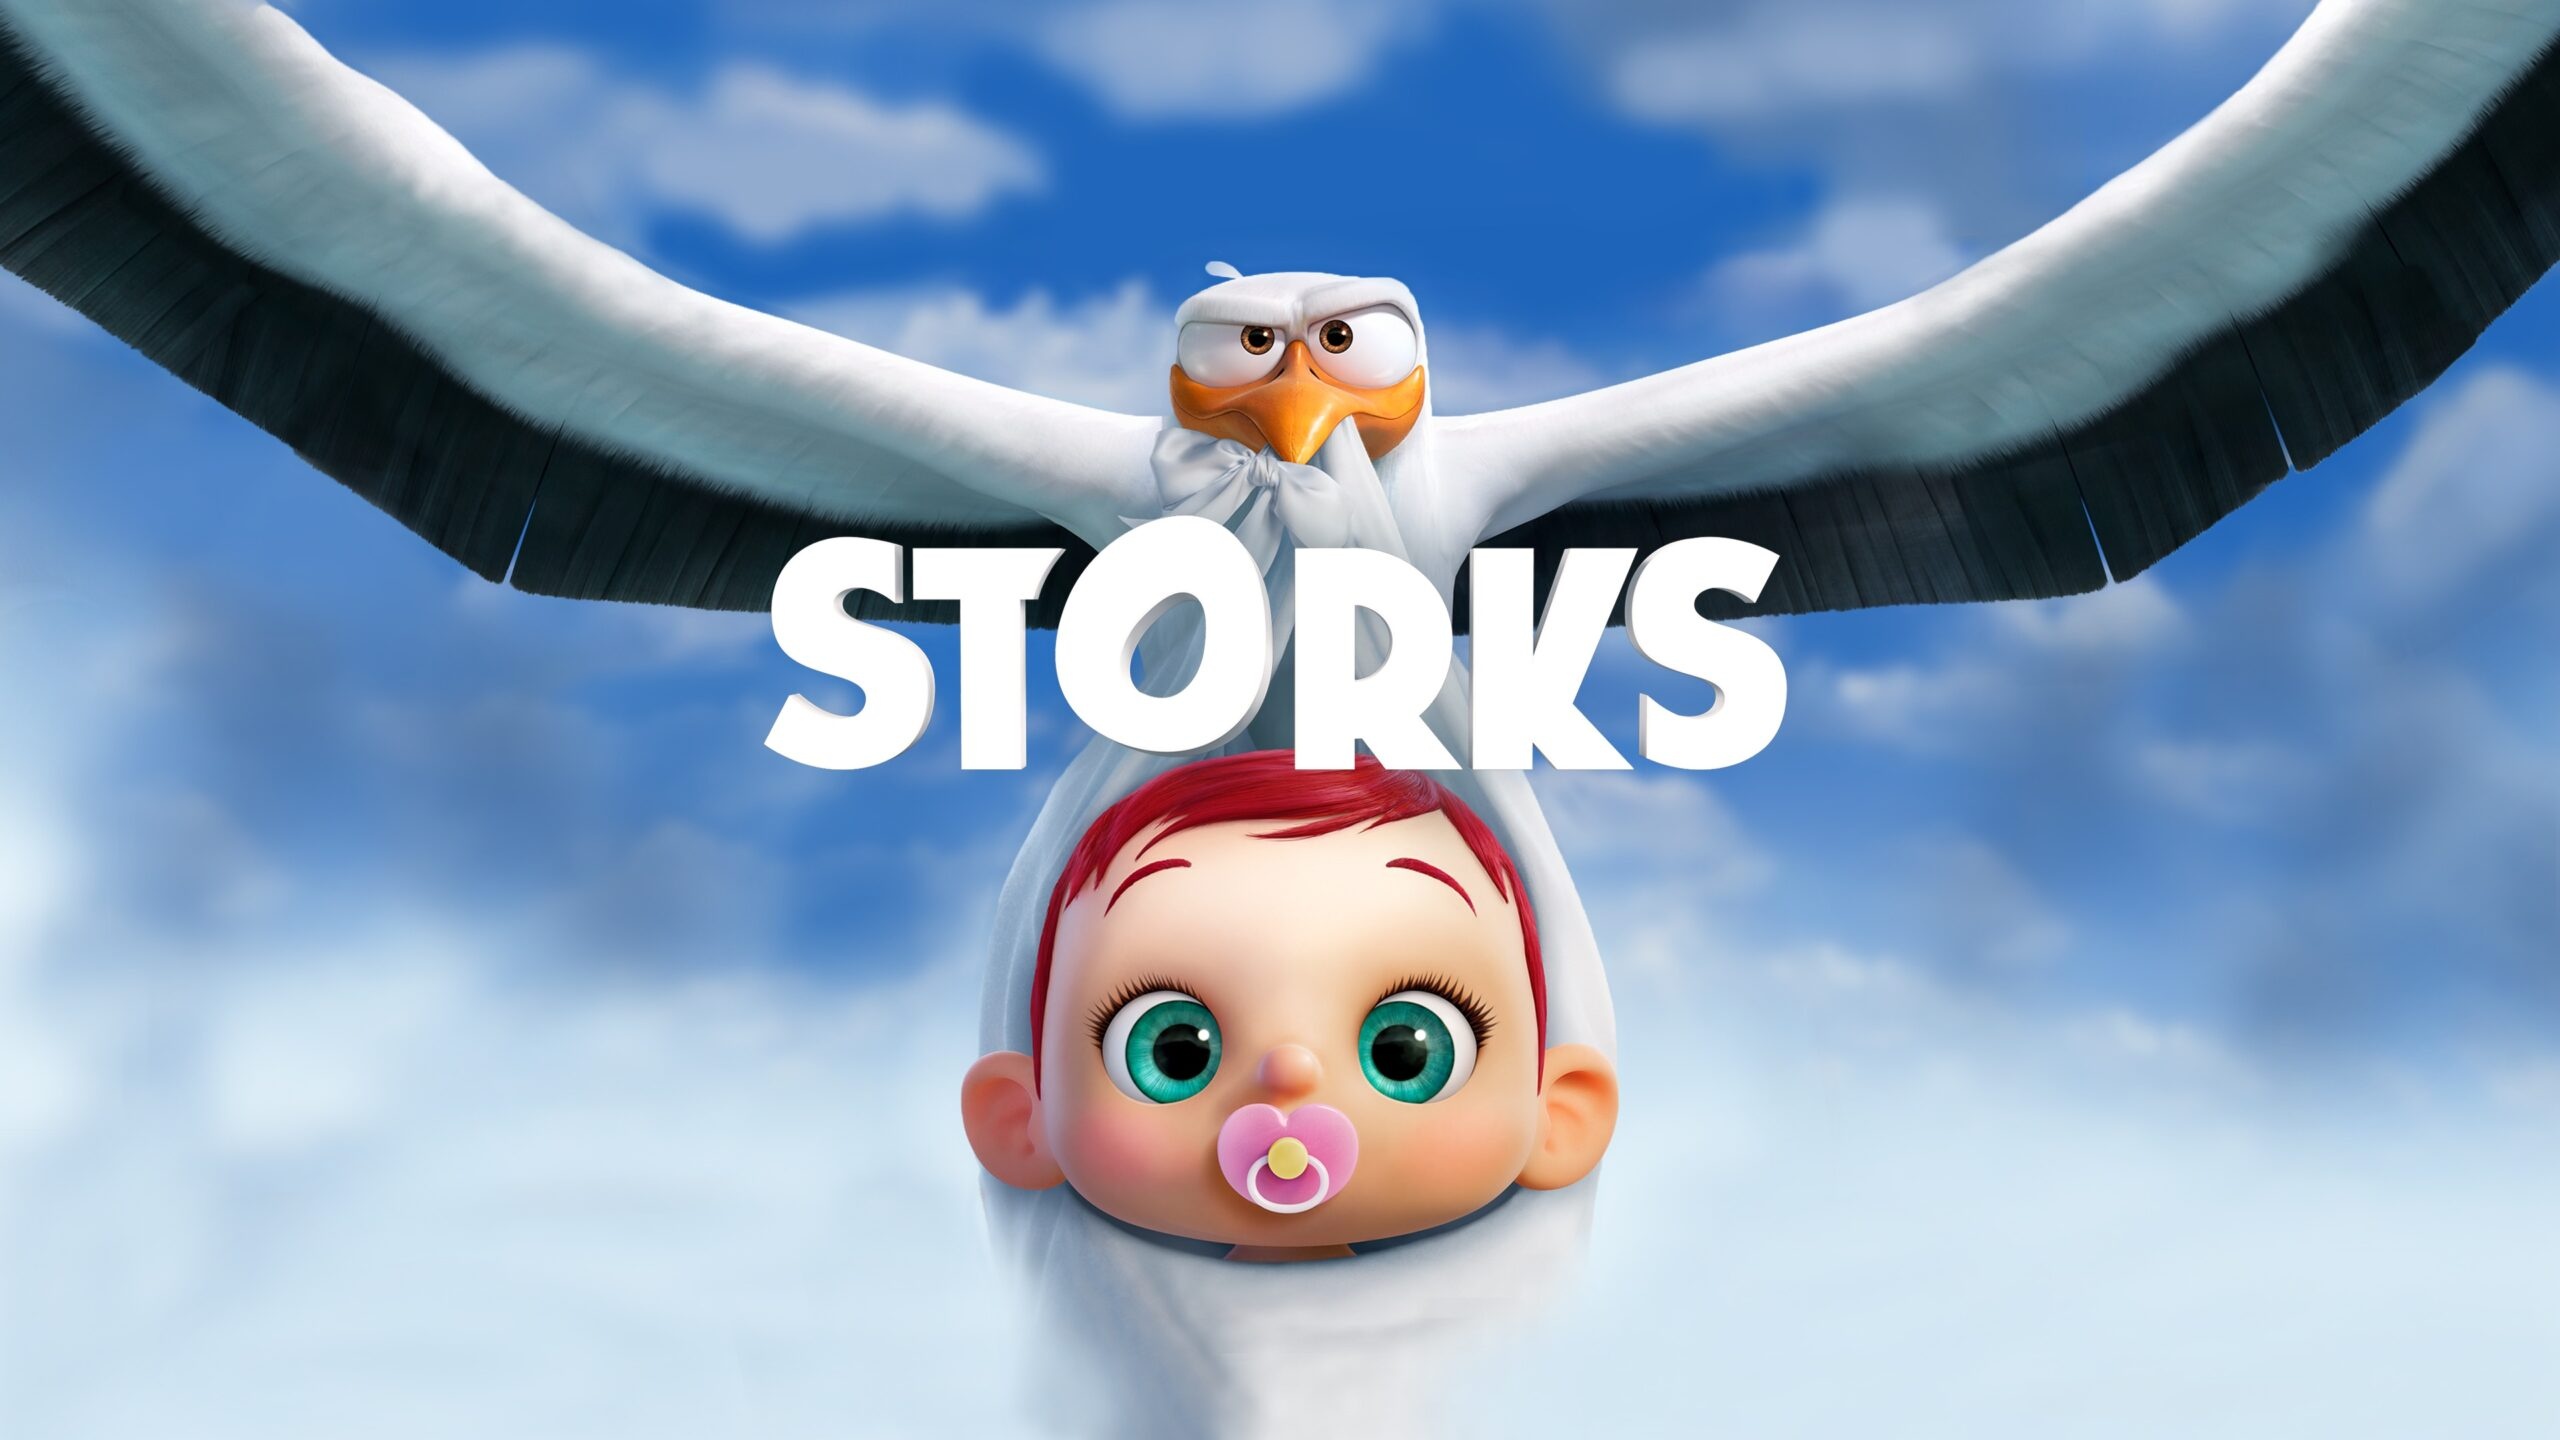 Storks cartoon, Jumpcut Online review, 2560x1440 HD Desktop